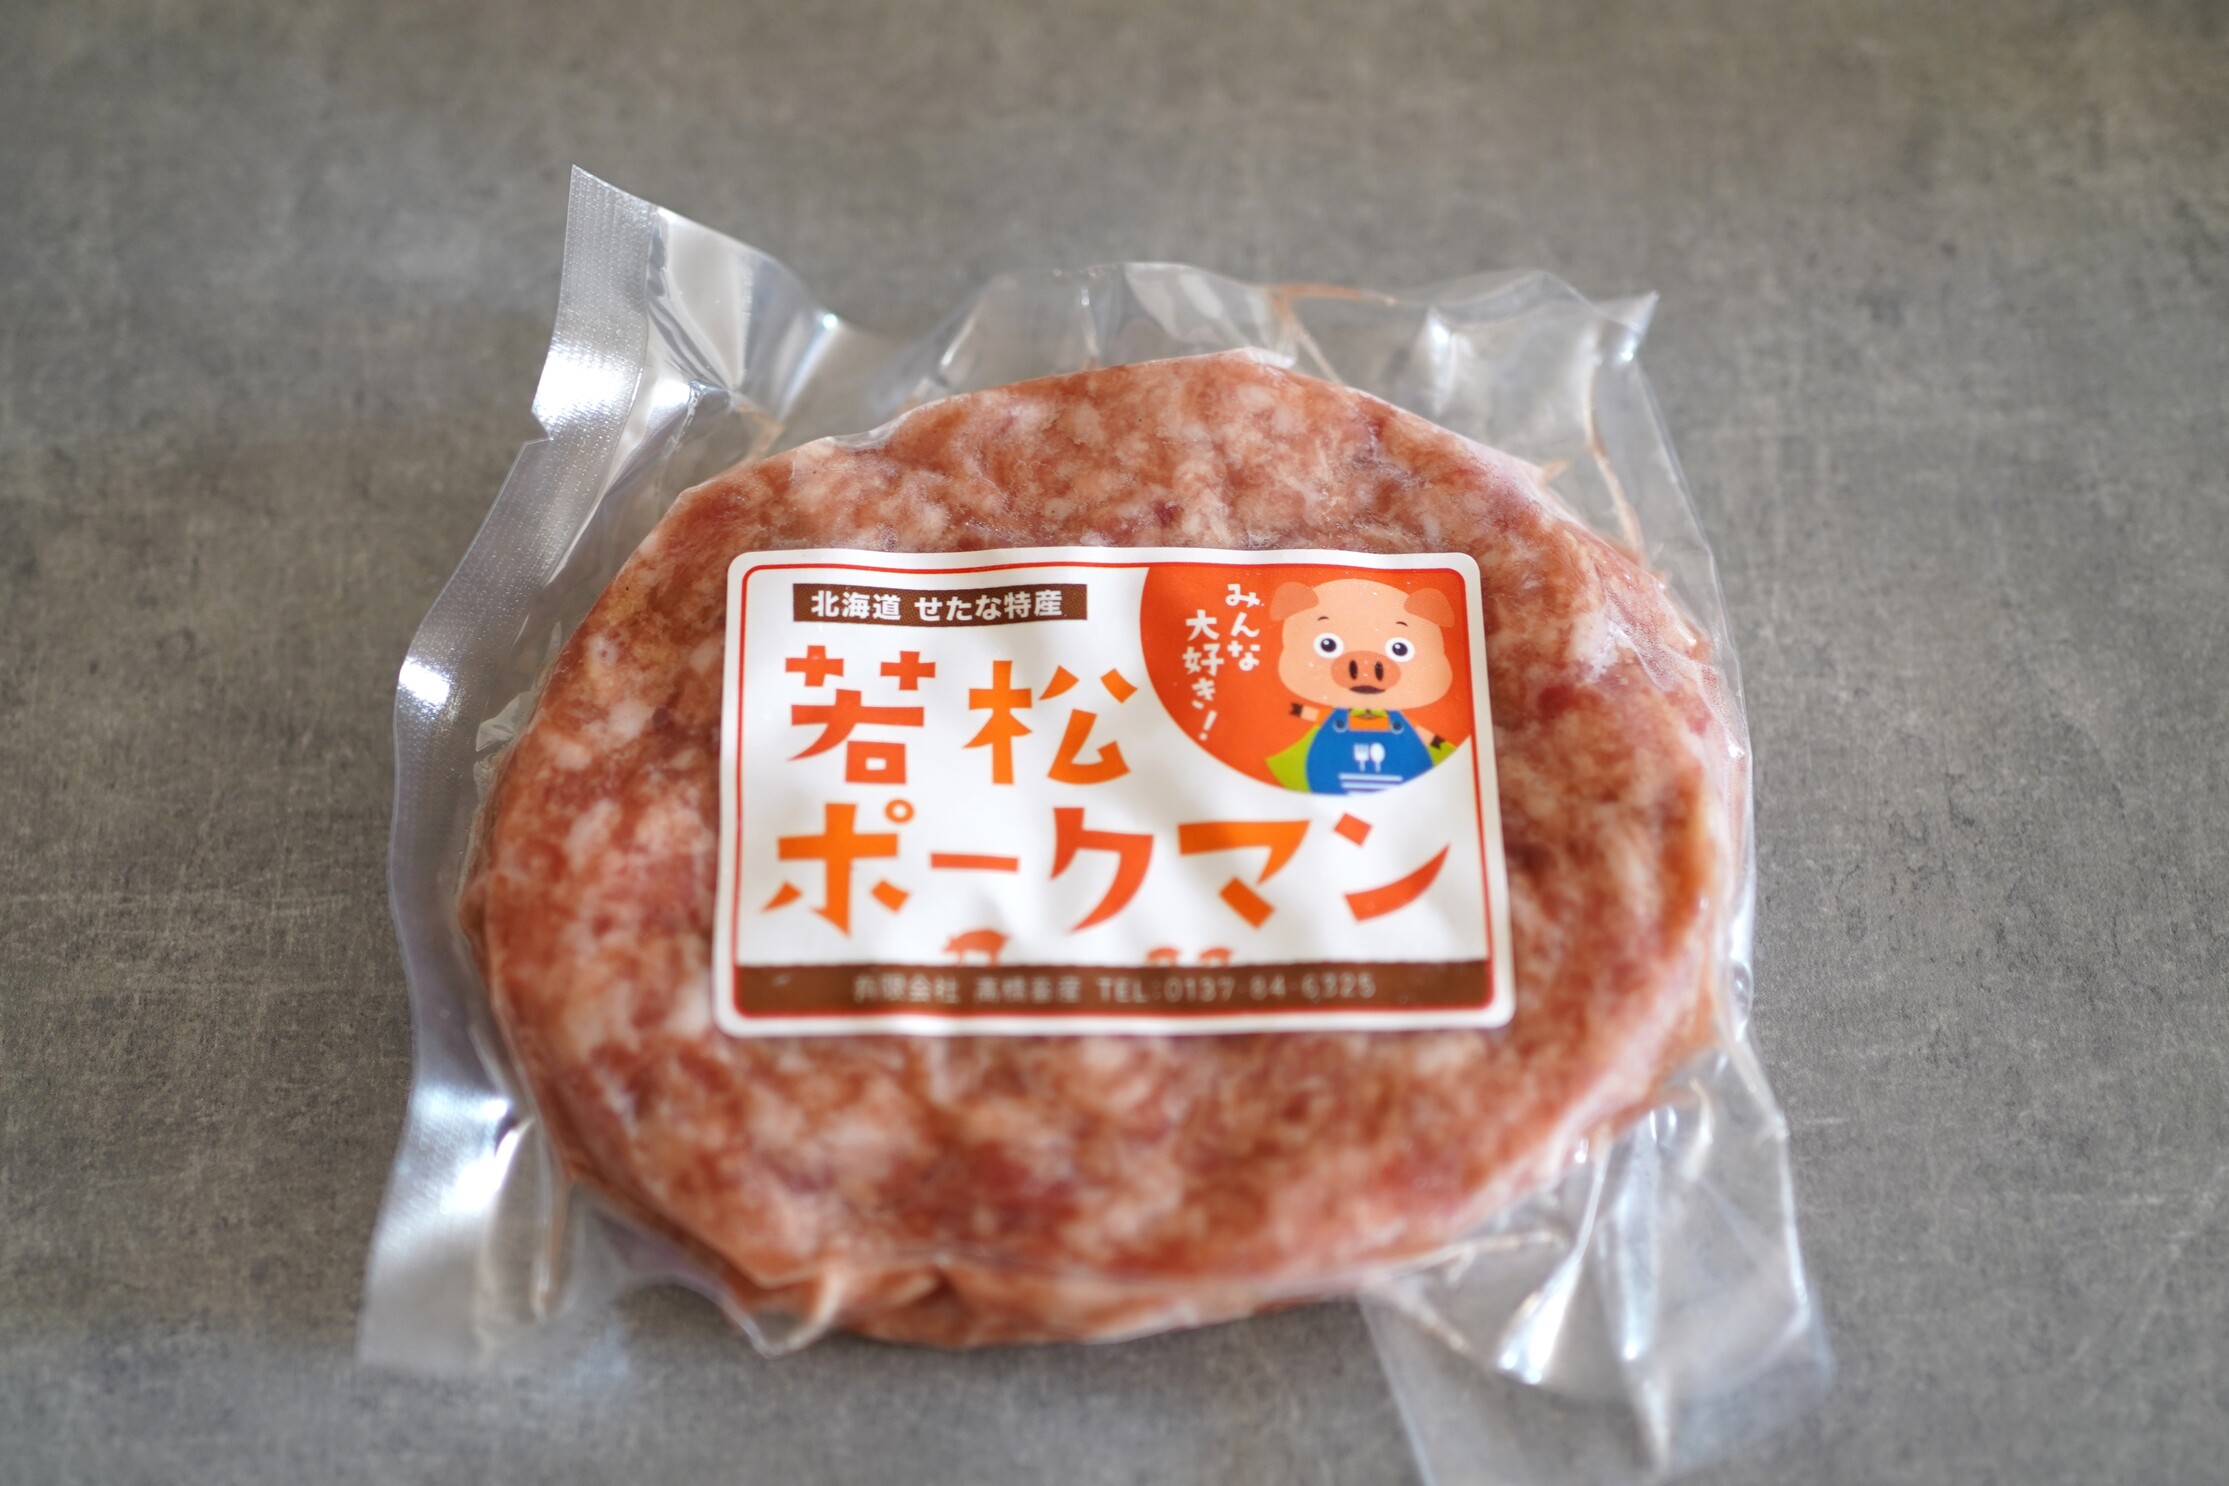 北海道産ブランドSPF豚「若松ポークマン」を食べ尽くせるよくばりセット